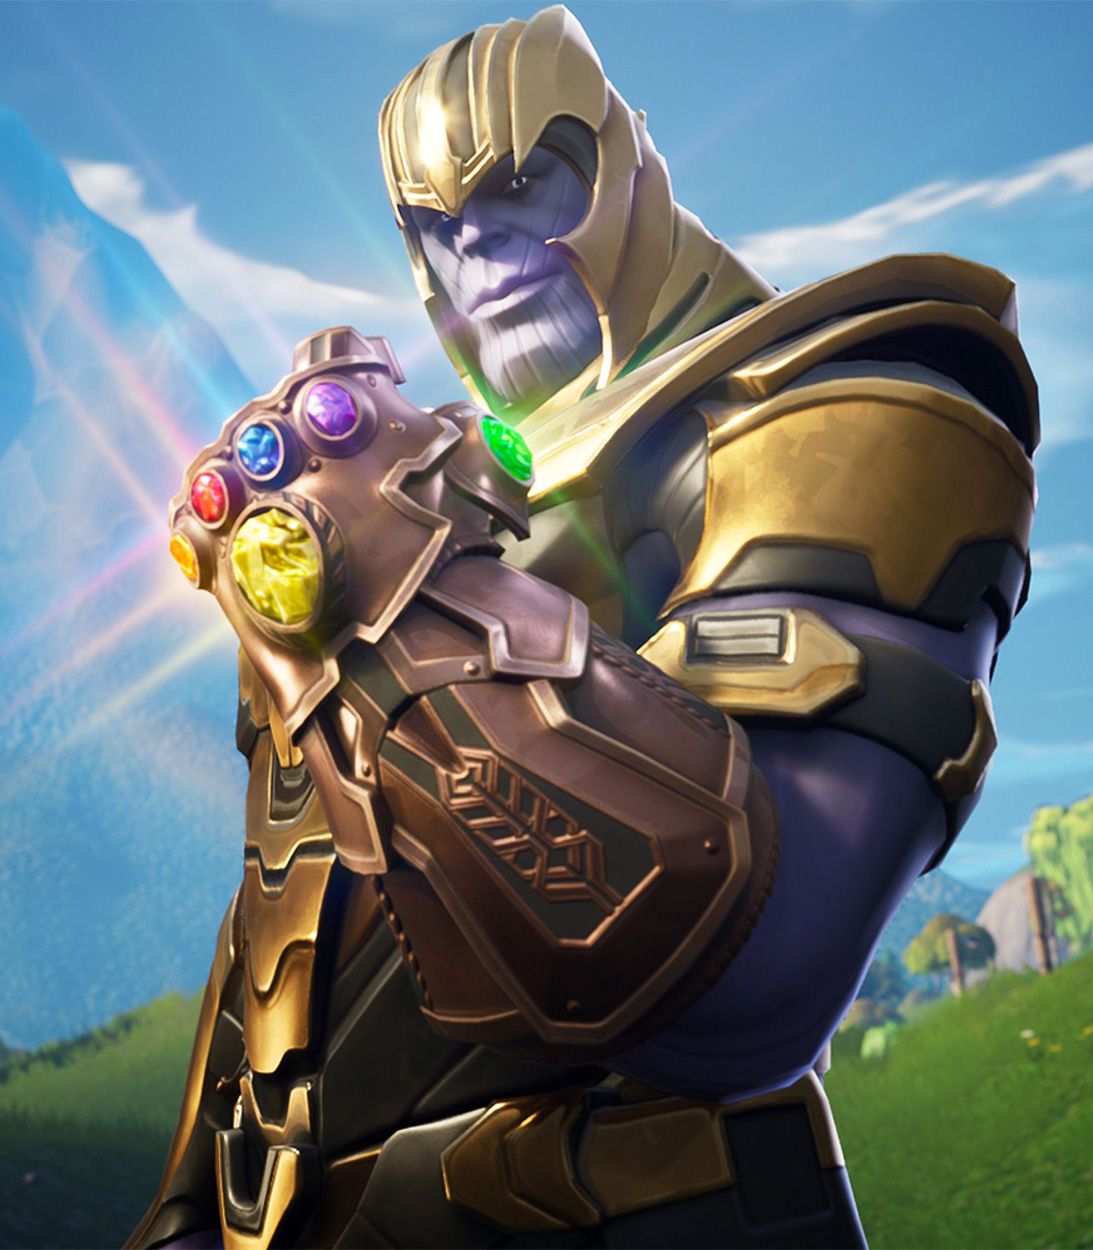 TLDR Marvel Thanos in Fortnite